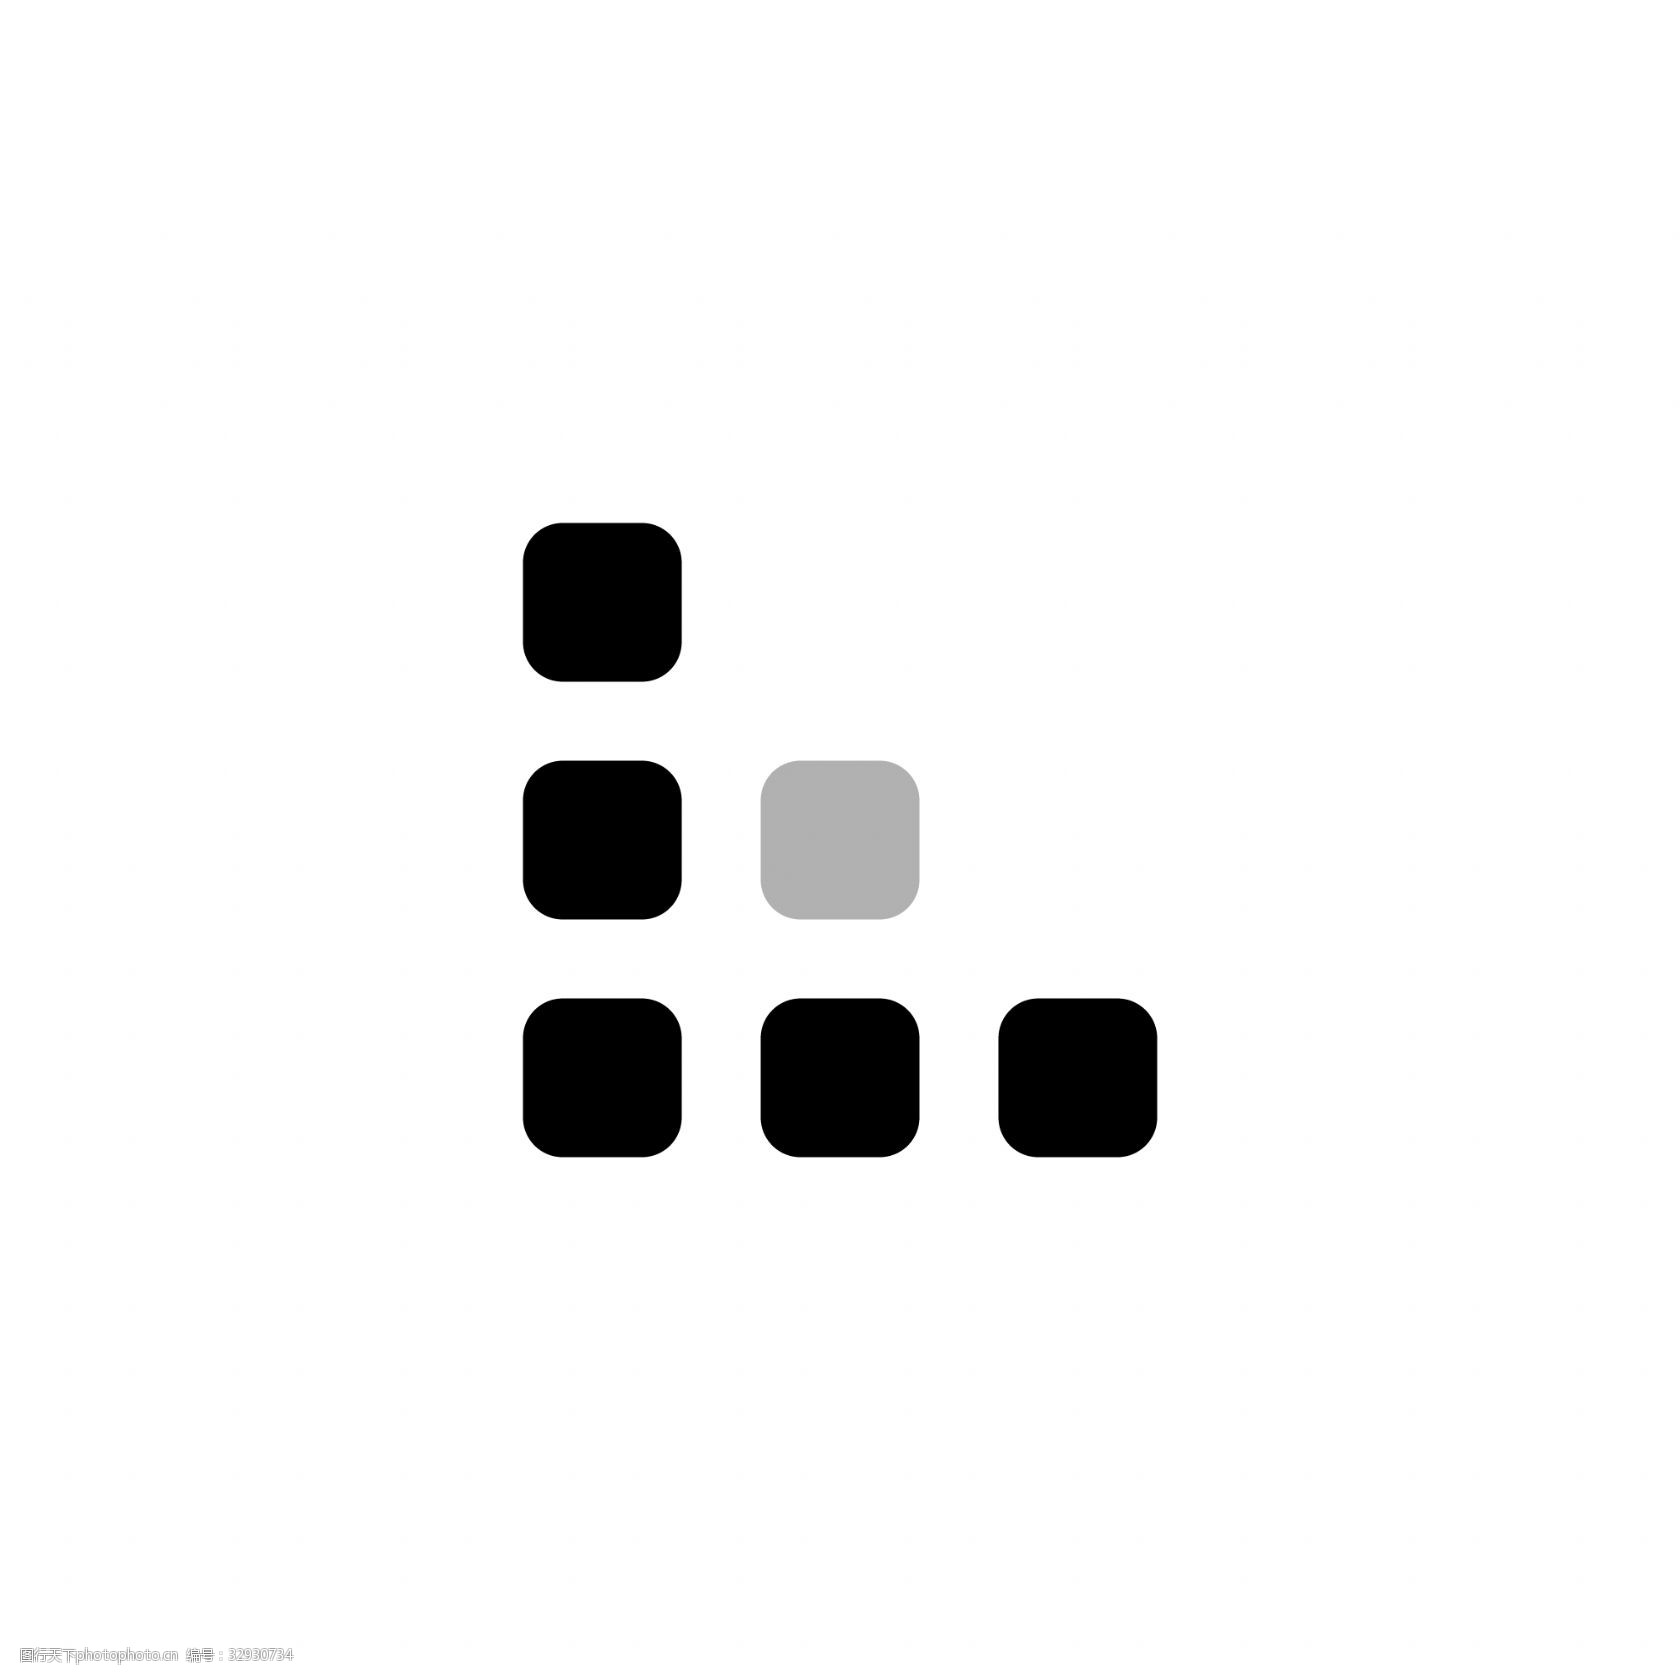 方块特殊符号大全复制_方块符号大全_游戏符号方块